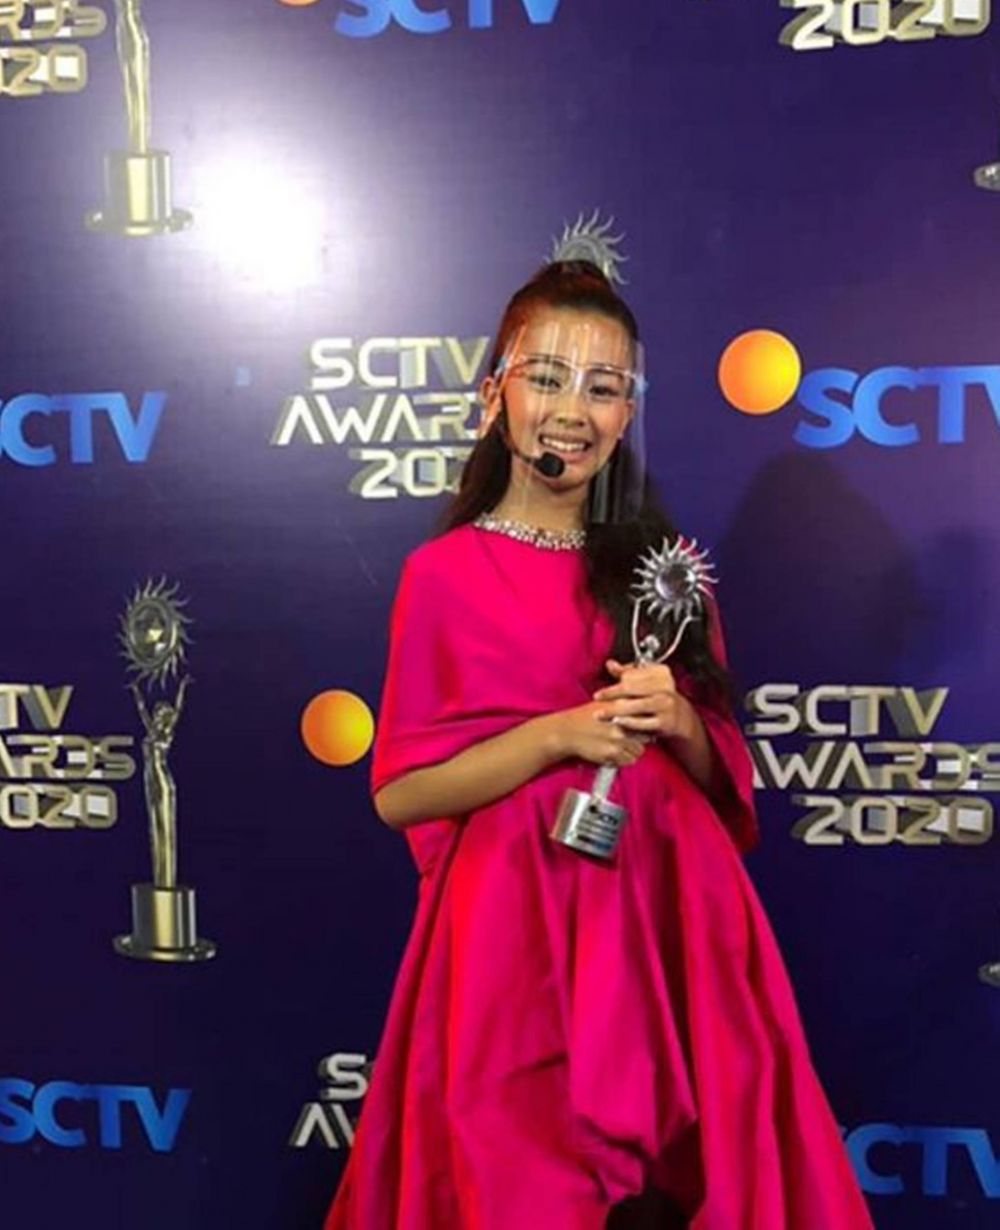 Nct 127 Dapat Penghargaan Khusus 13 Pemenang Sctv Awards 2020